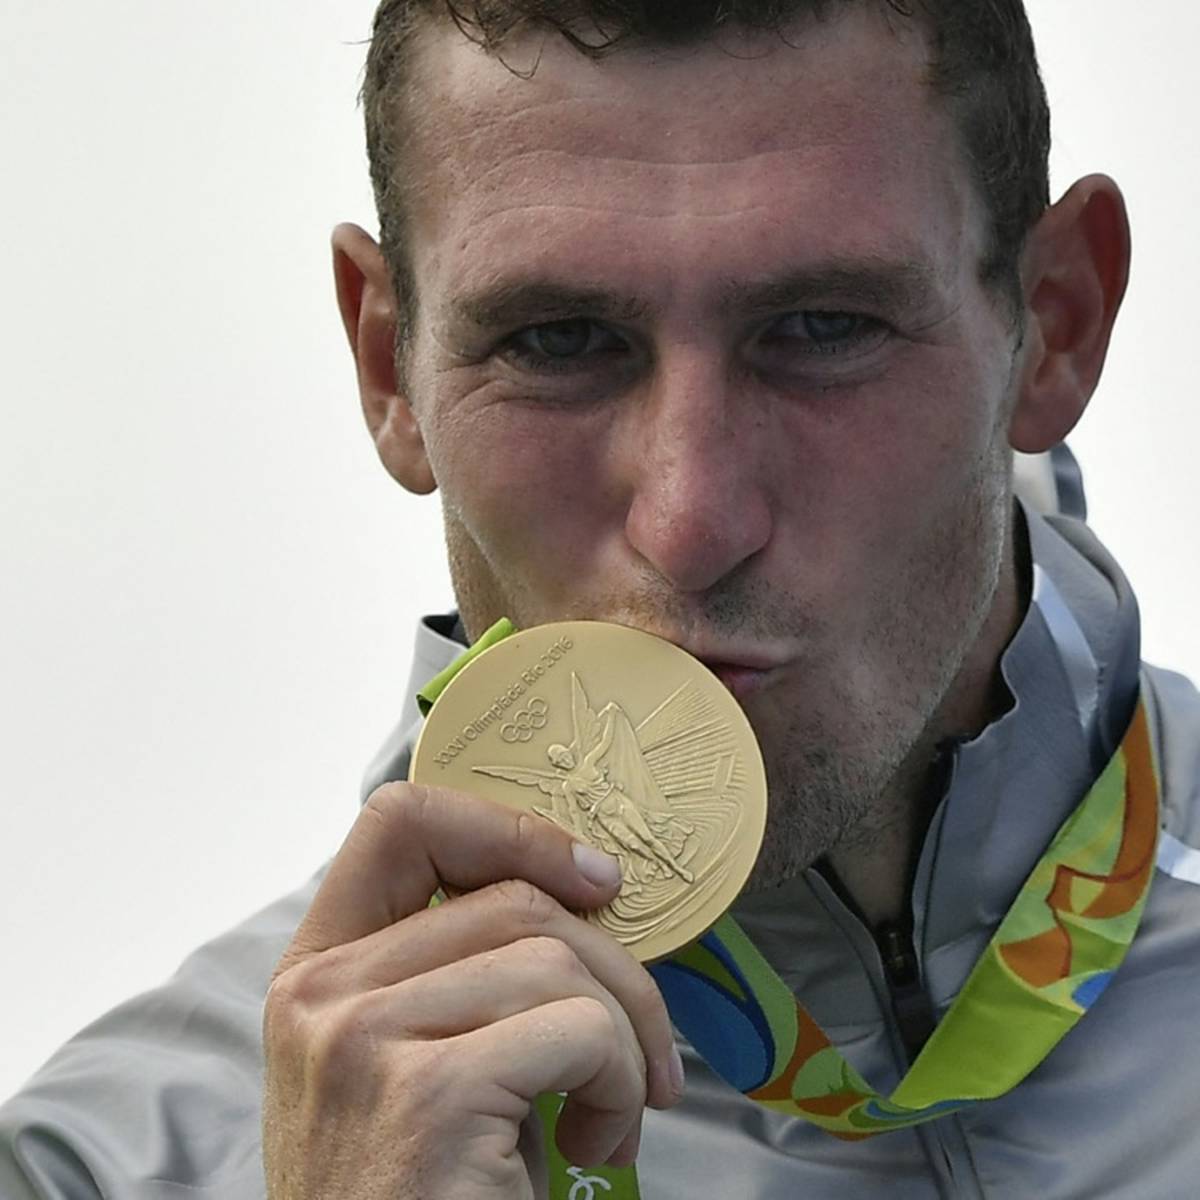 Der dreimalige Olympiasieger Sebastian Brendel visiert nach seinem kompletten WM-Medaillensatz auch bei der Heim-EM mehrere Podest-Platzierungen an.